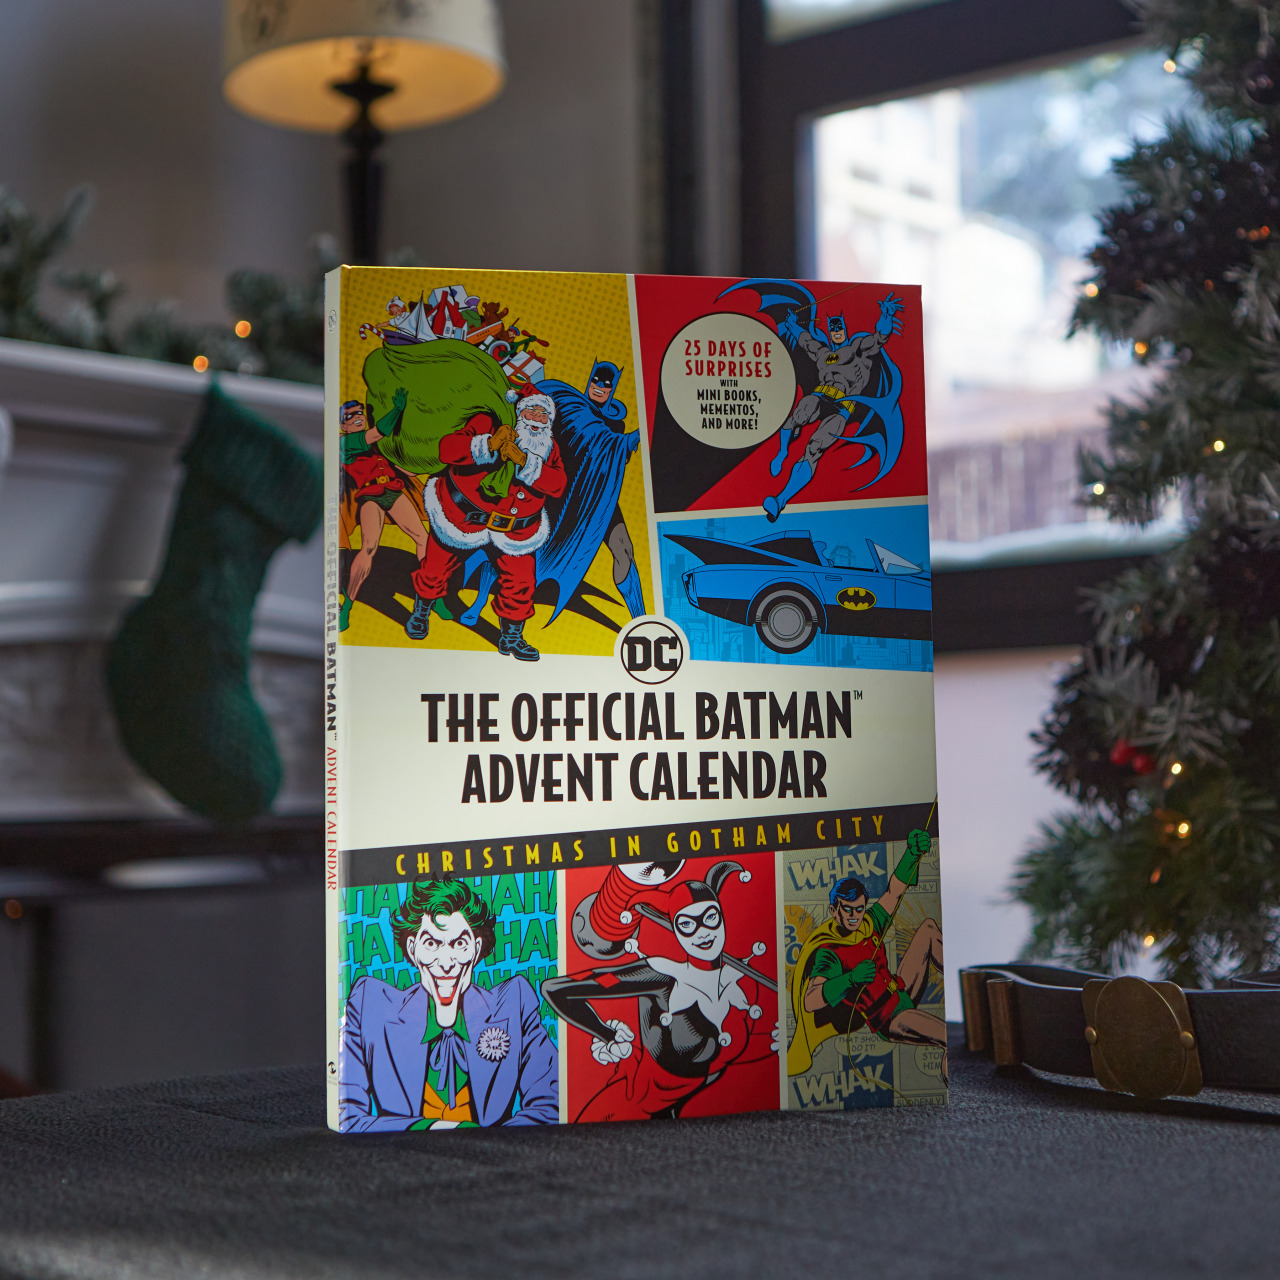 BATMAN NOTES The Official Batman Advent Calendar